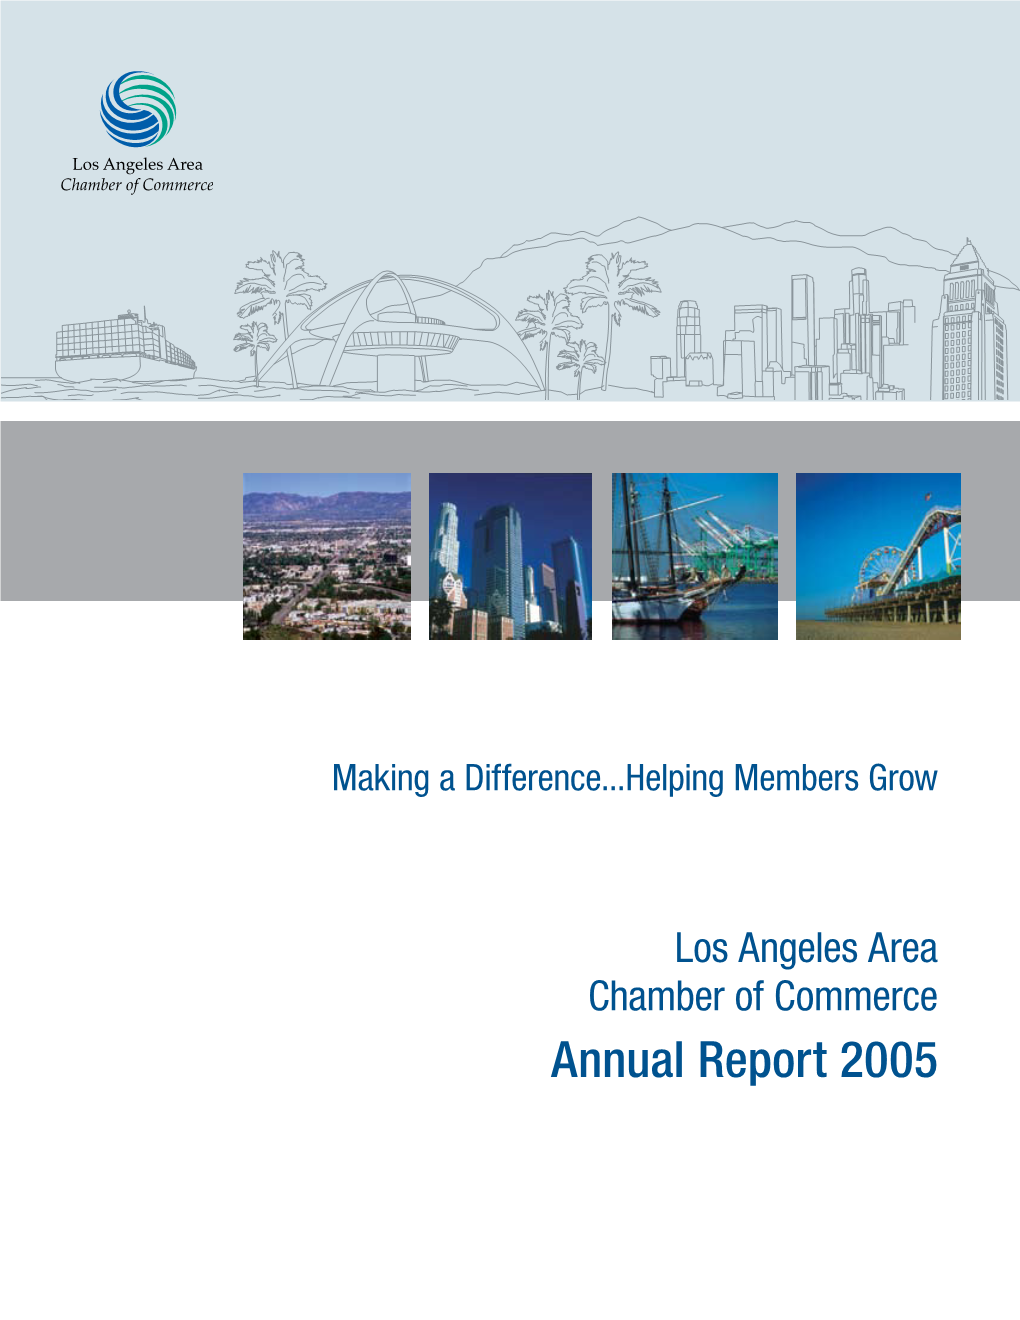 Annual Report 2005 2005 Annual Report 2005 Annual Report